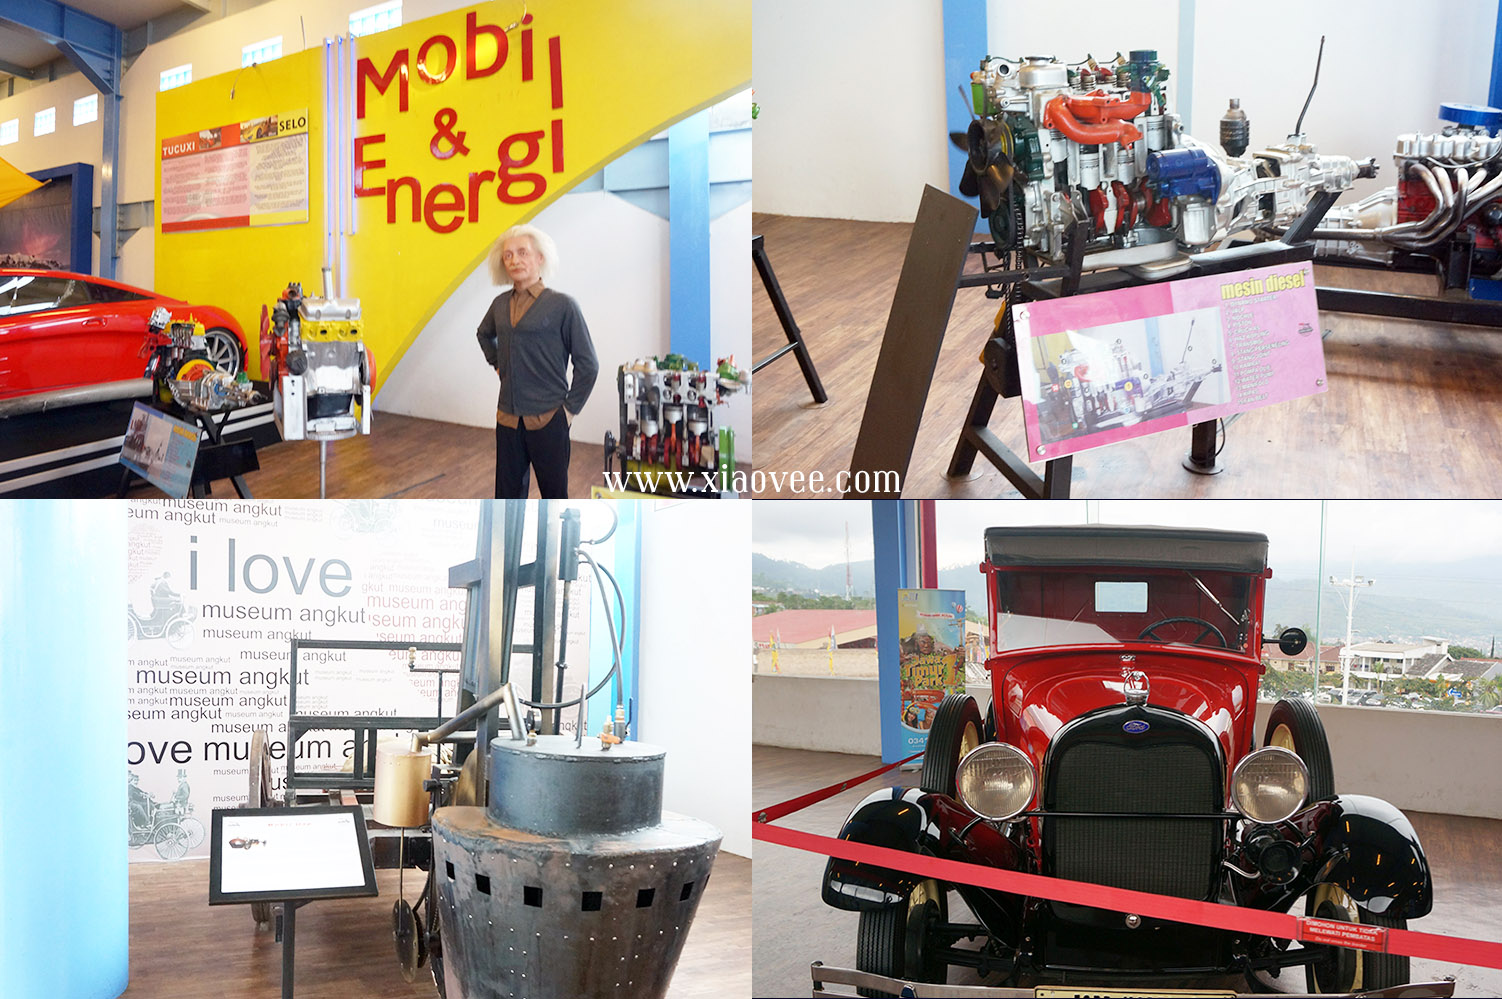 Museum Angkut, Transport Museum in Batu Indonesia review